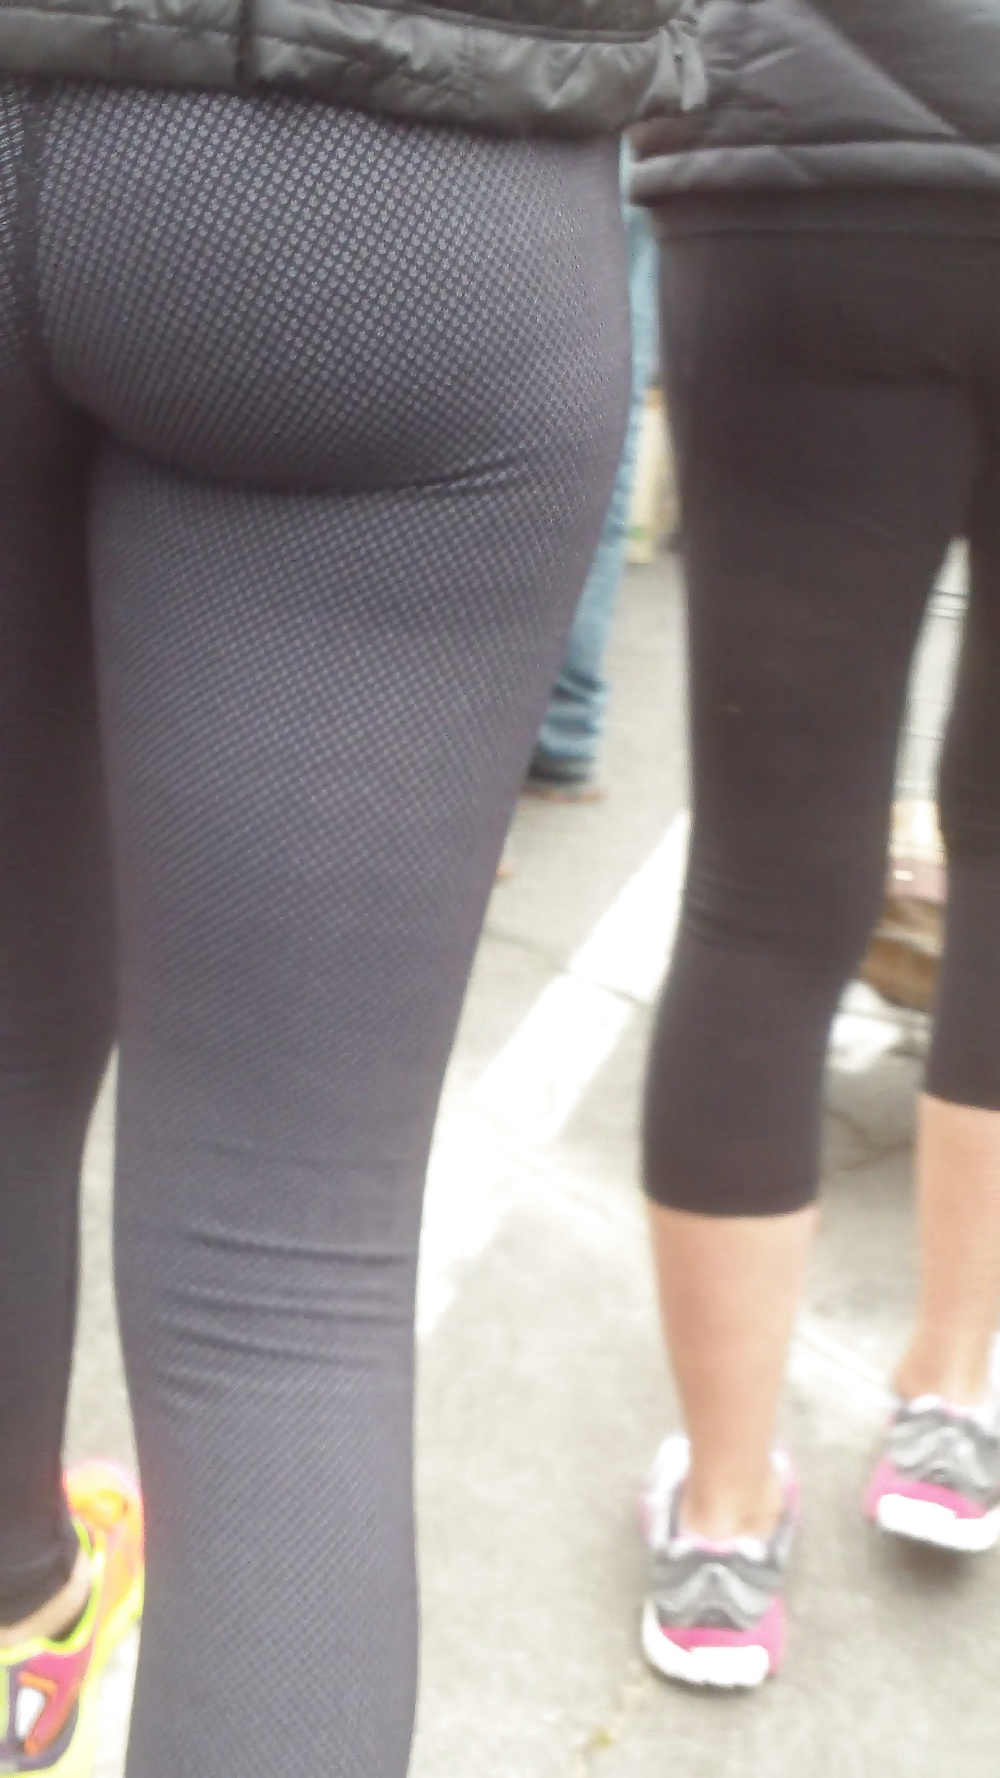 Popular teen girls ass & butt in jeans part 3 #25403028